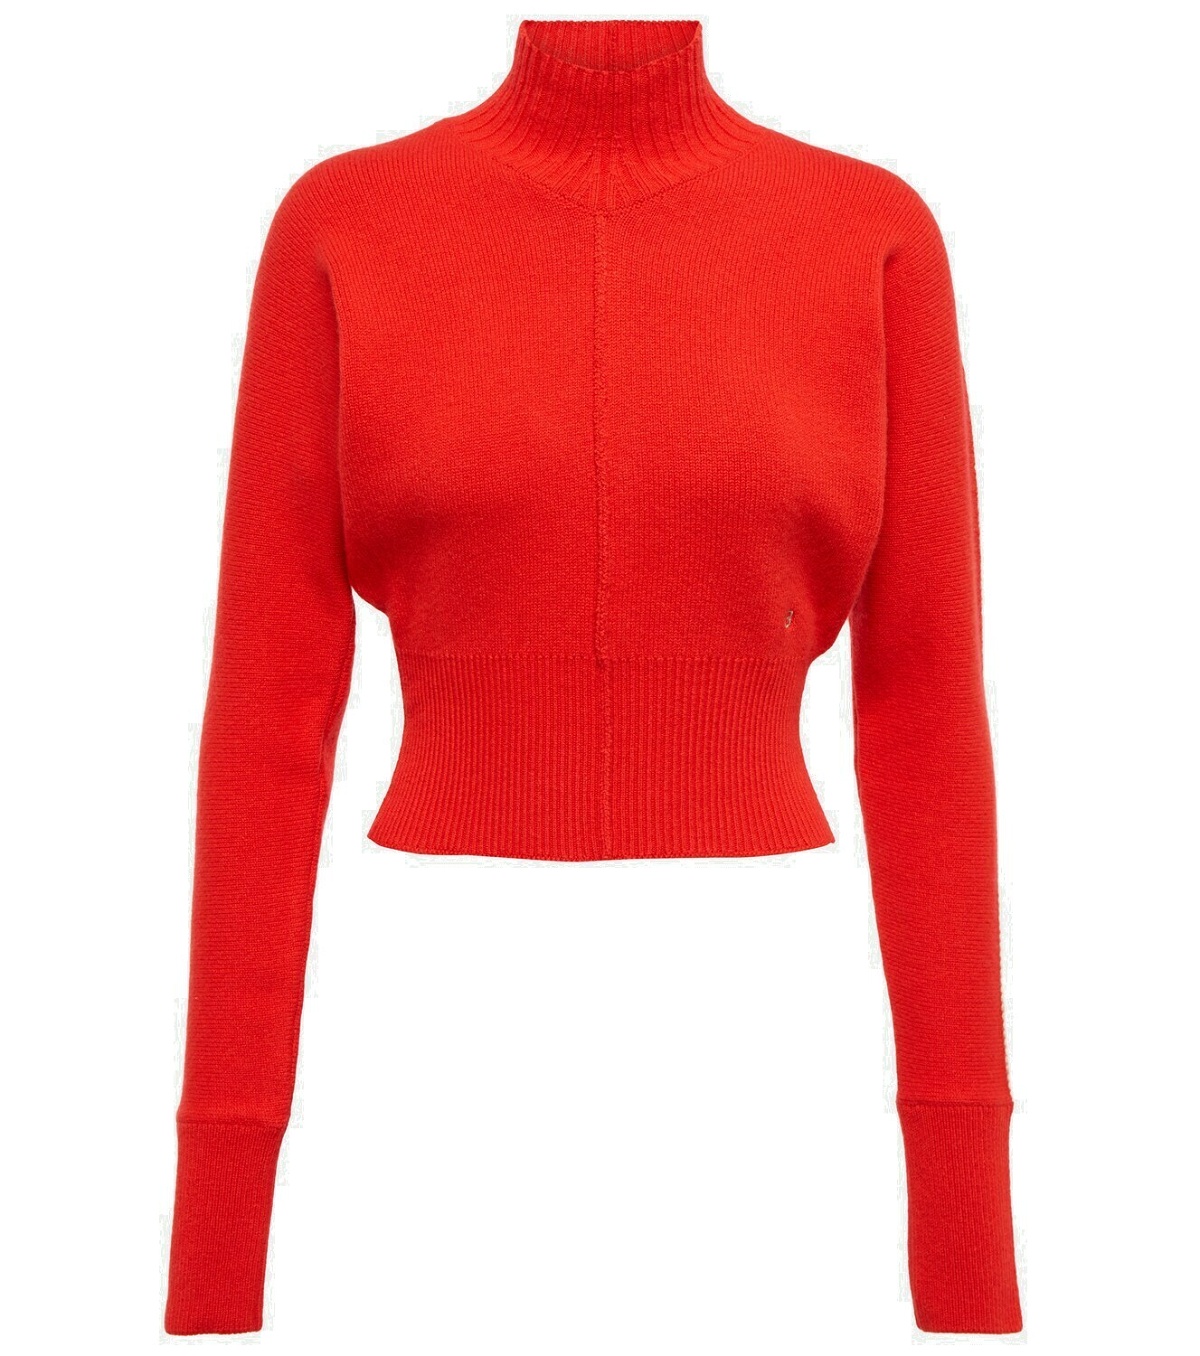 Victoria Beckham - Cashmere-blend turtleneck sweater Victoria Beckham